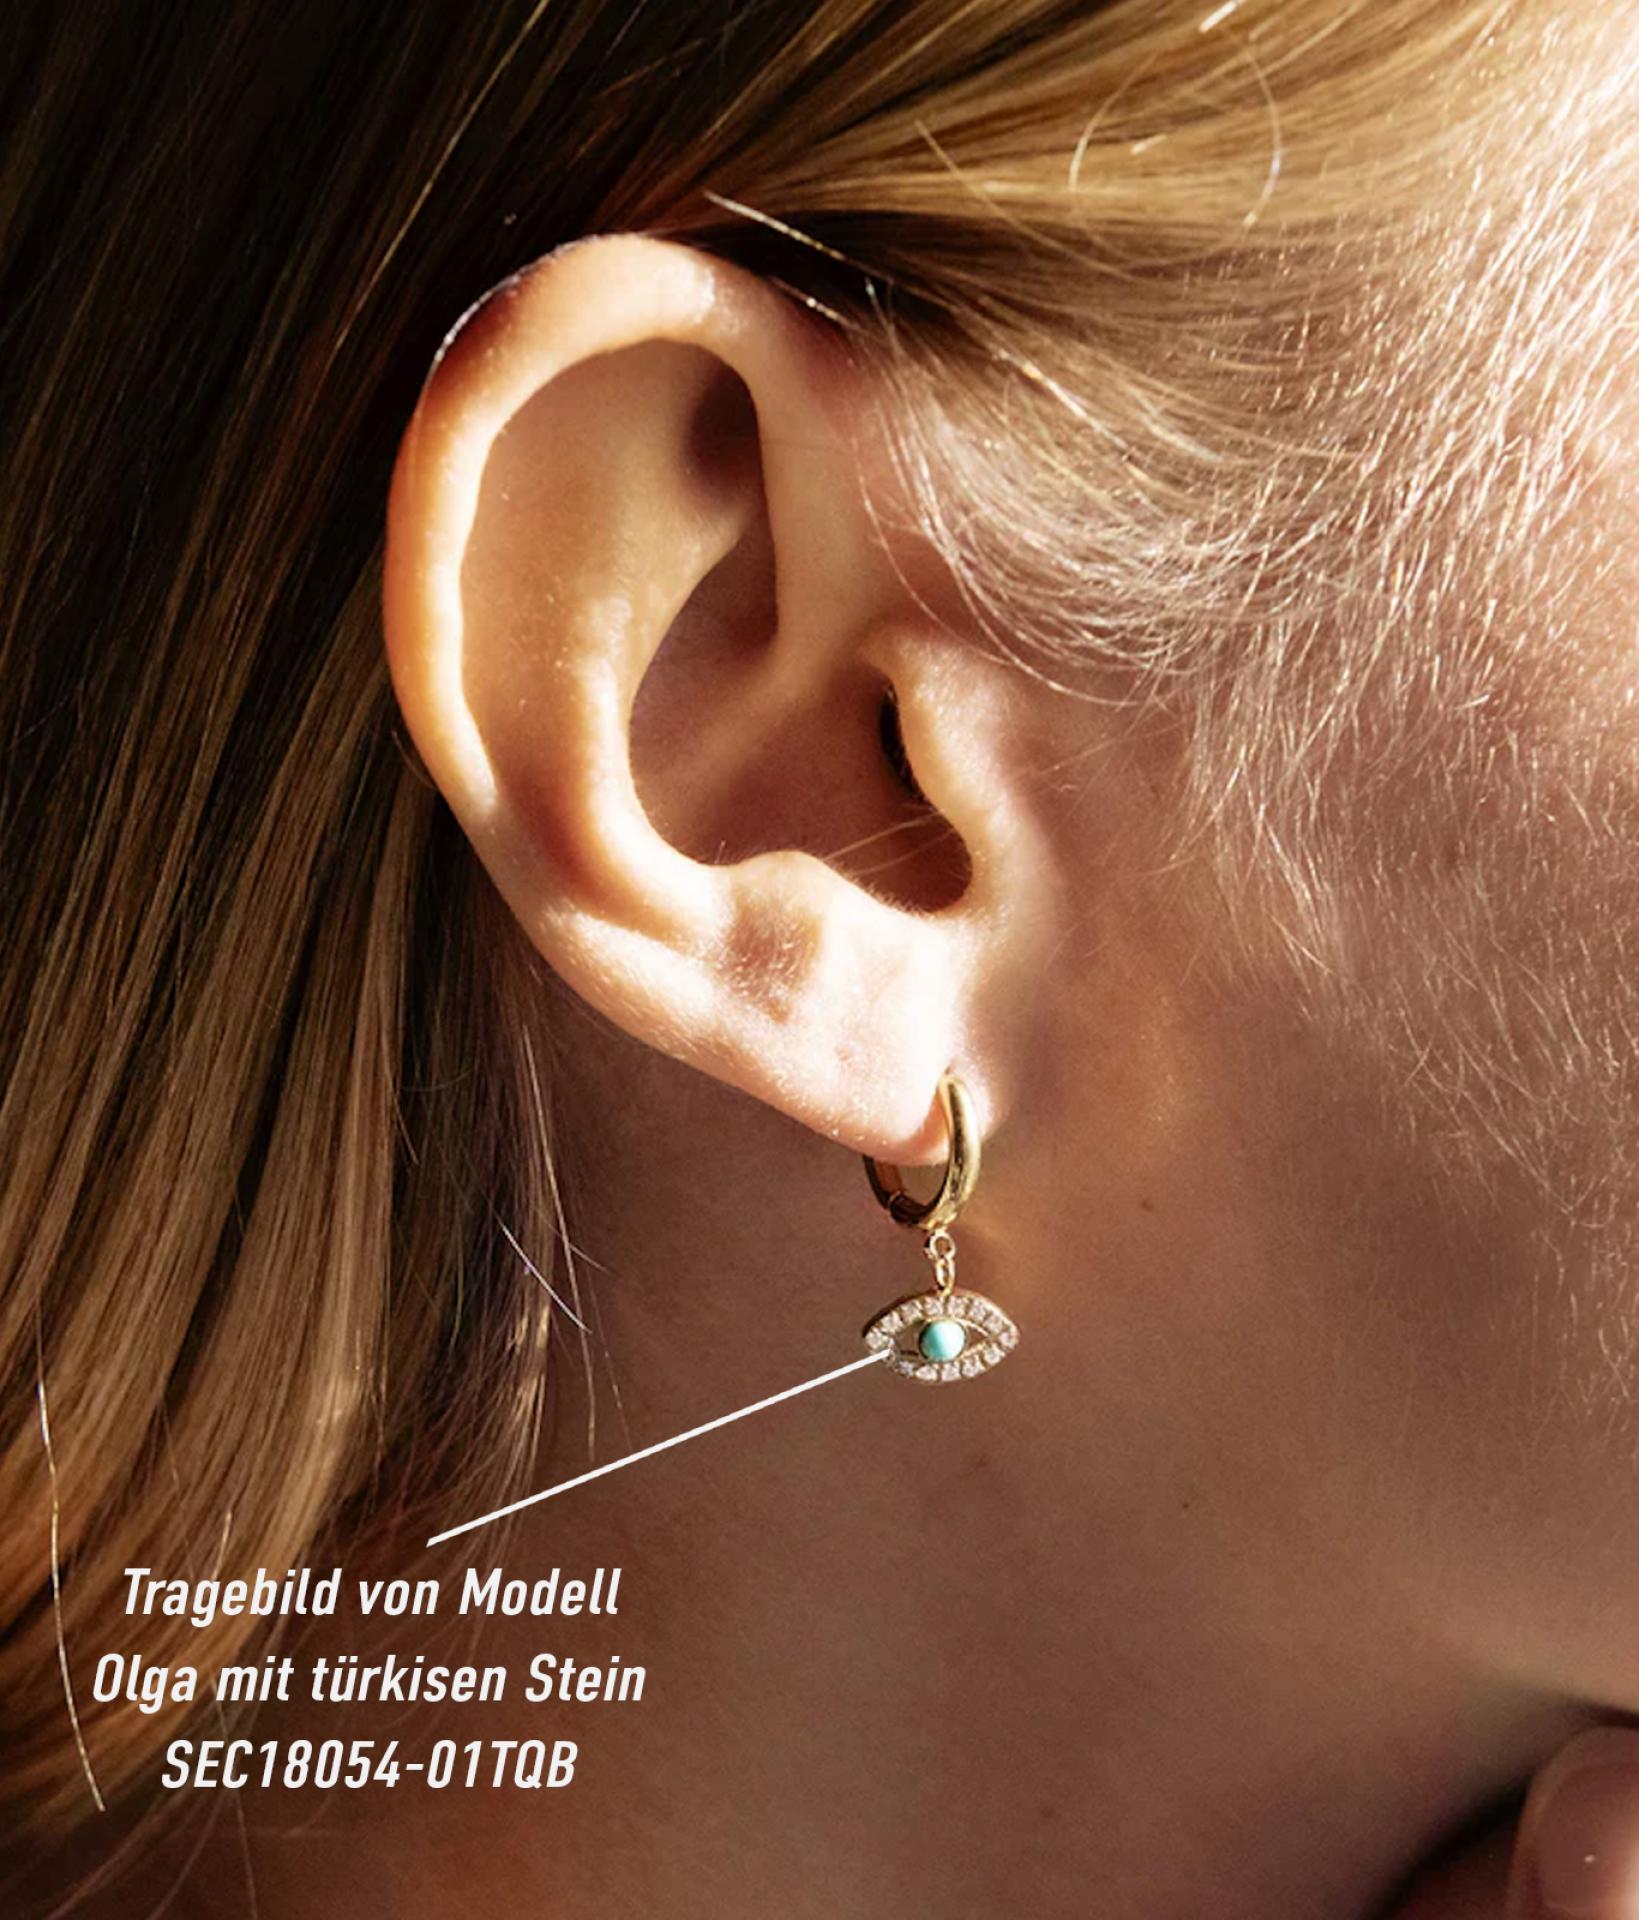 blondhaarige Frau mit seitlichem Profil zeigt ihr Ohr mit einem goldfarbenden Zag Bijoux Ohrring in Augenform